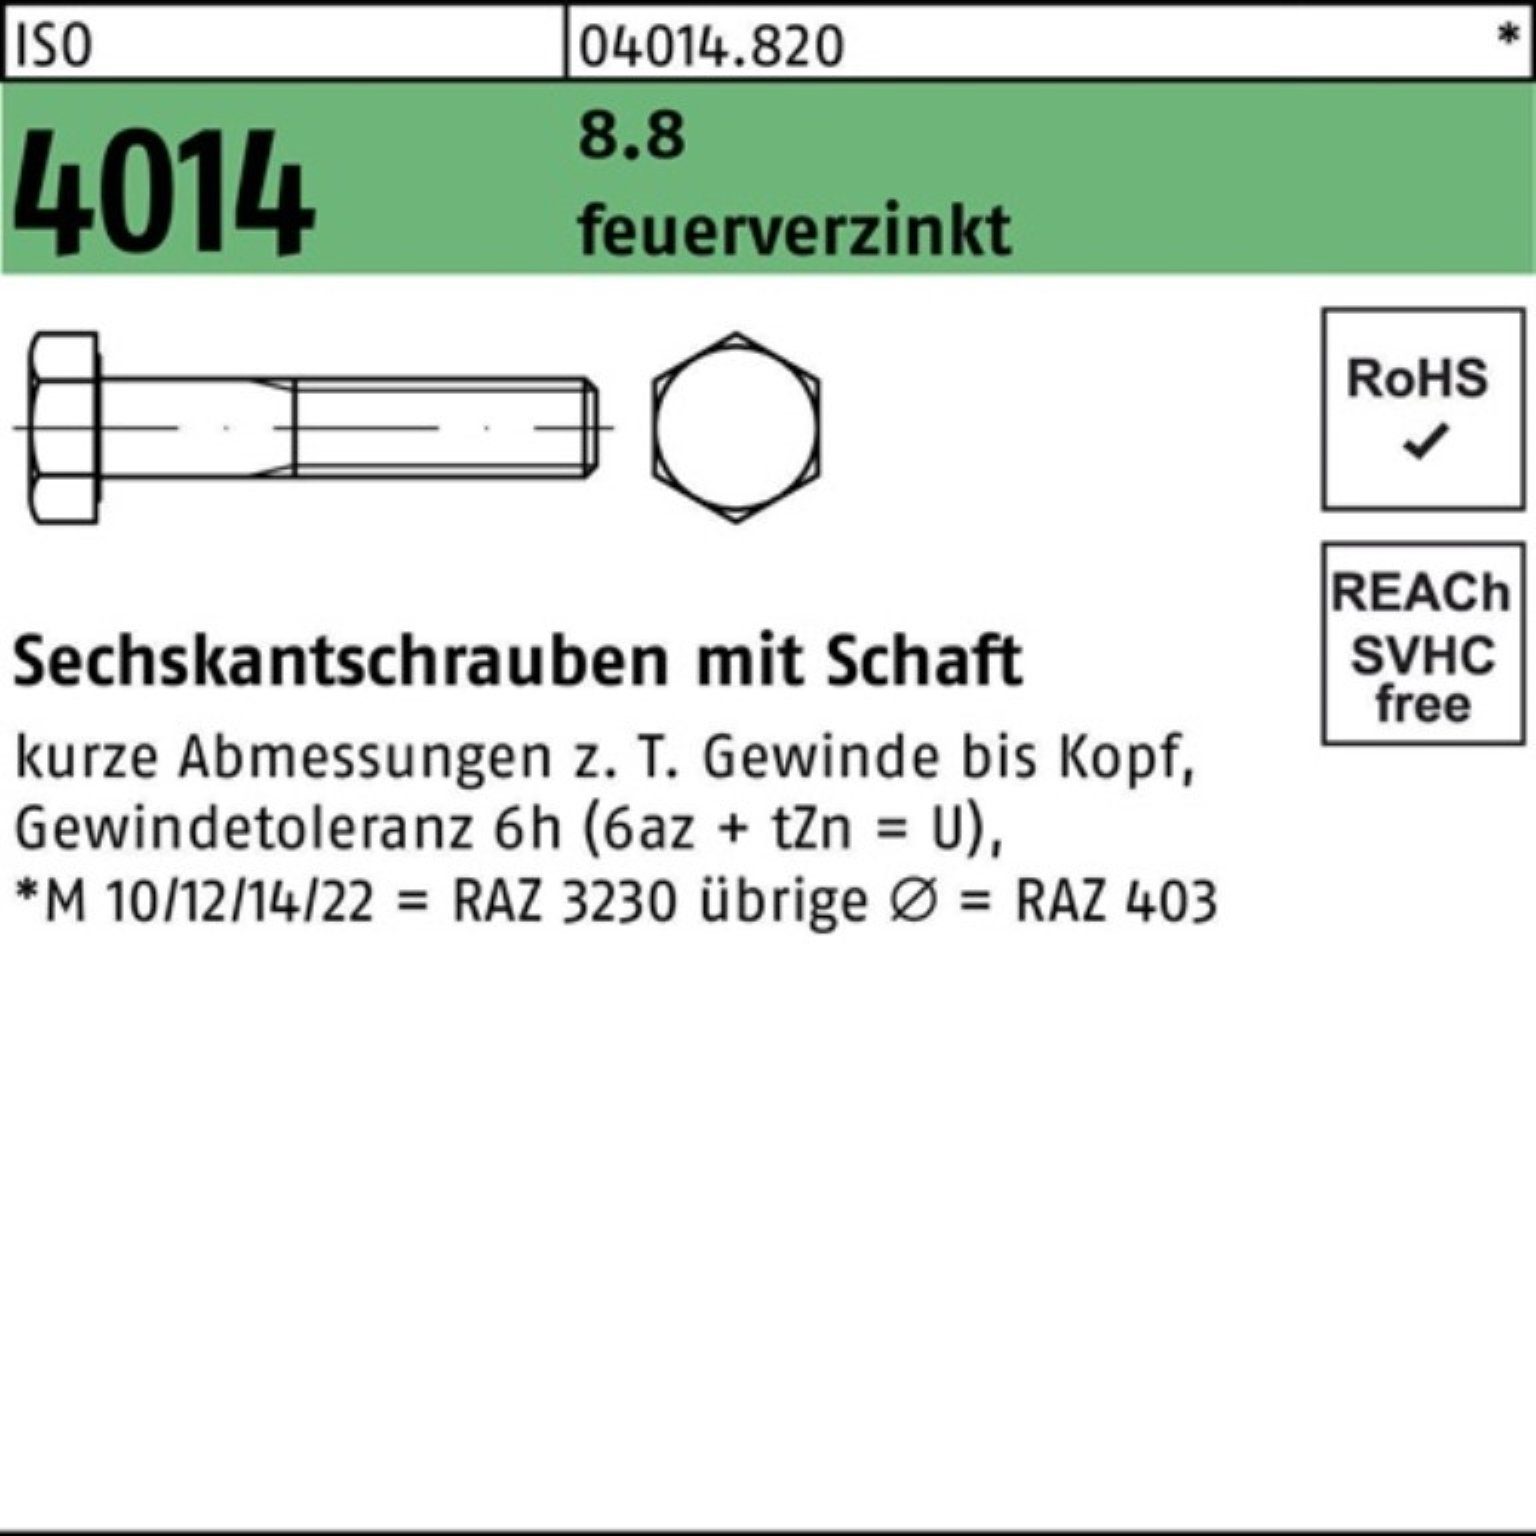 Bufab Sechskantschraube 100er Pack ISO 200 8.8 2 M16x Sechskantschraube Schaft feuerverz. 4014